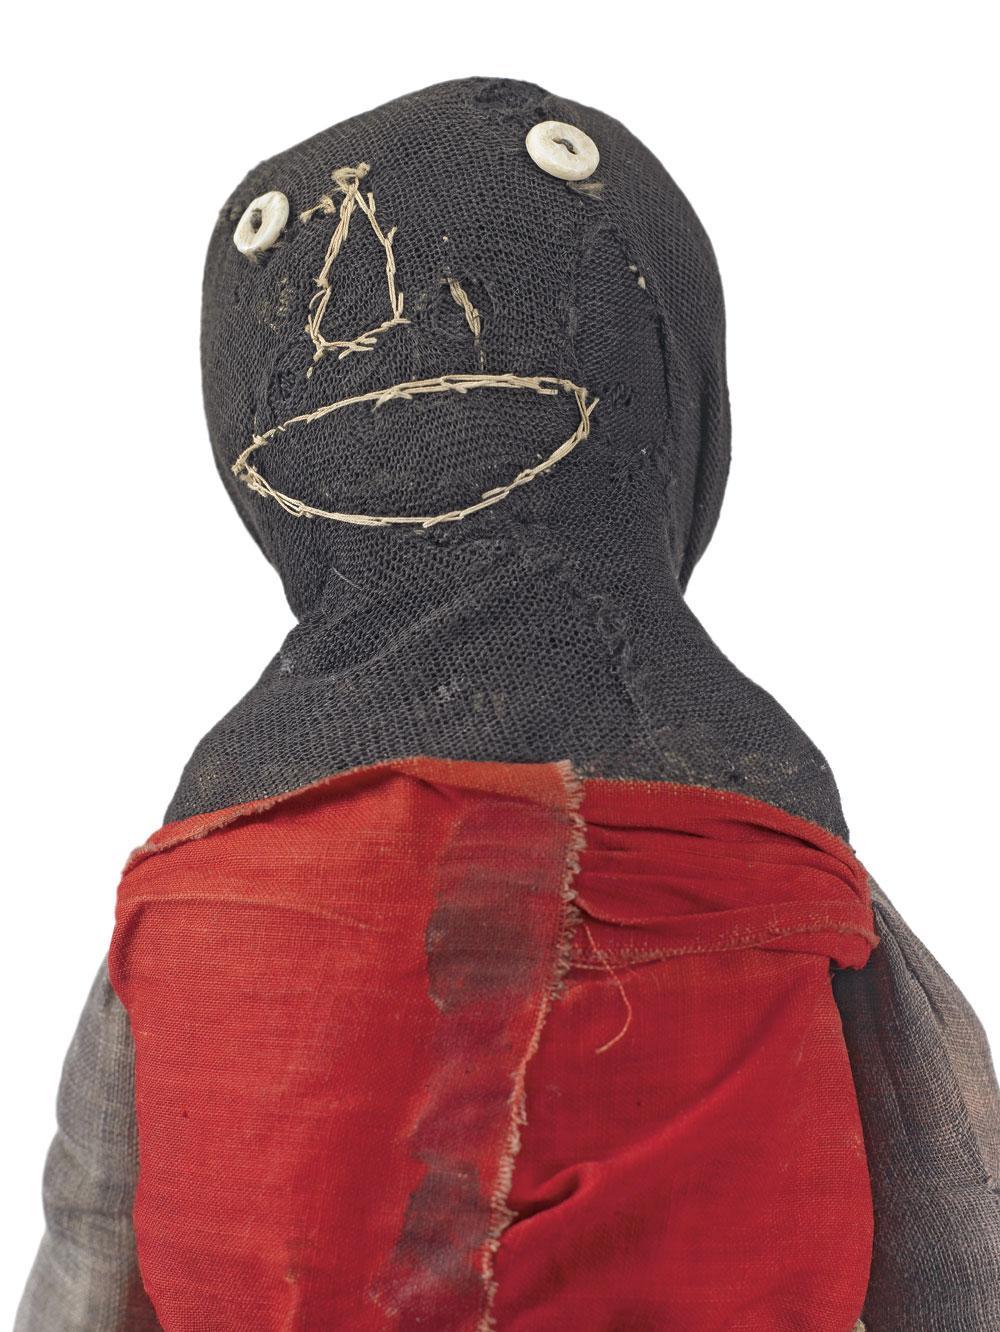 Poupée chaussette à la chemise rouge, Auteure inconnue, Etats-Unis, circa 1920-1930.